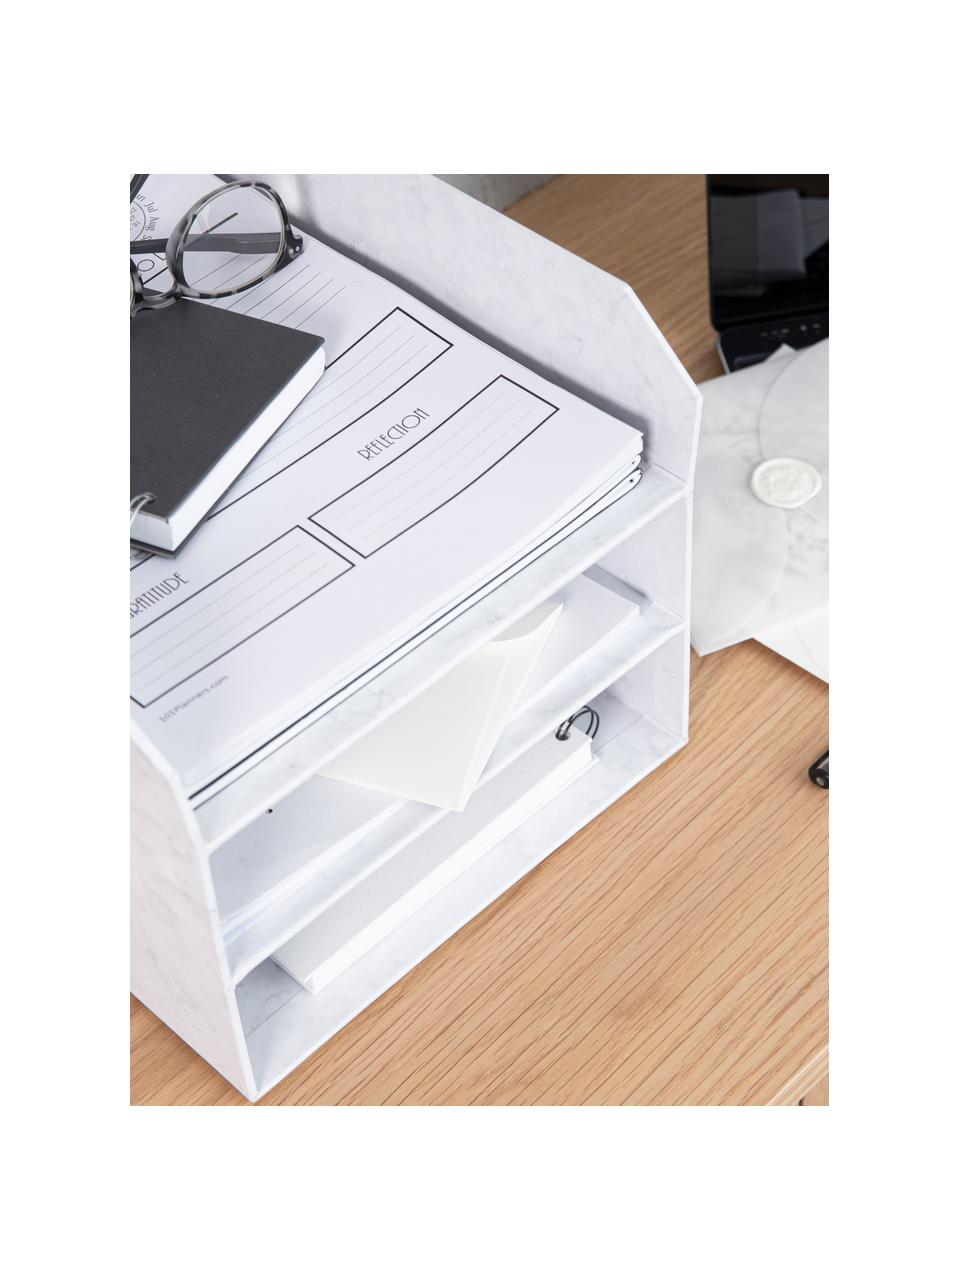 Dokumenten-Ablage Trey, Fester, laminierter Karton
(100 % recyceltes Papier), Weiß, marmoriert, B 23 x H 21 cm